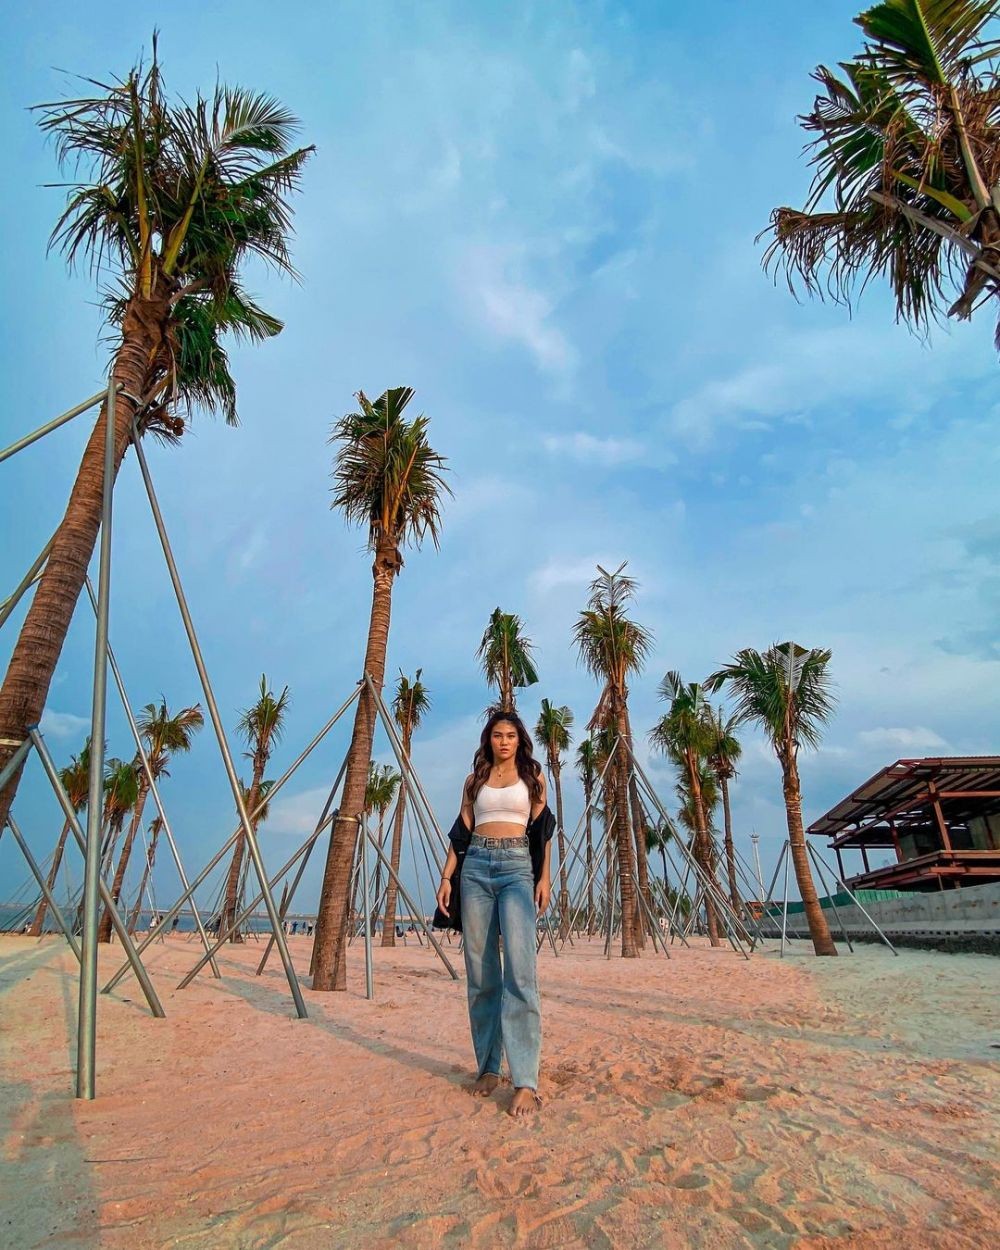 Wisata Pantai PIK 2 Jakarta Utara: Rute, Lokasi, dan Harga